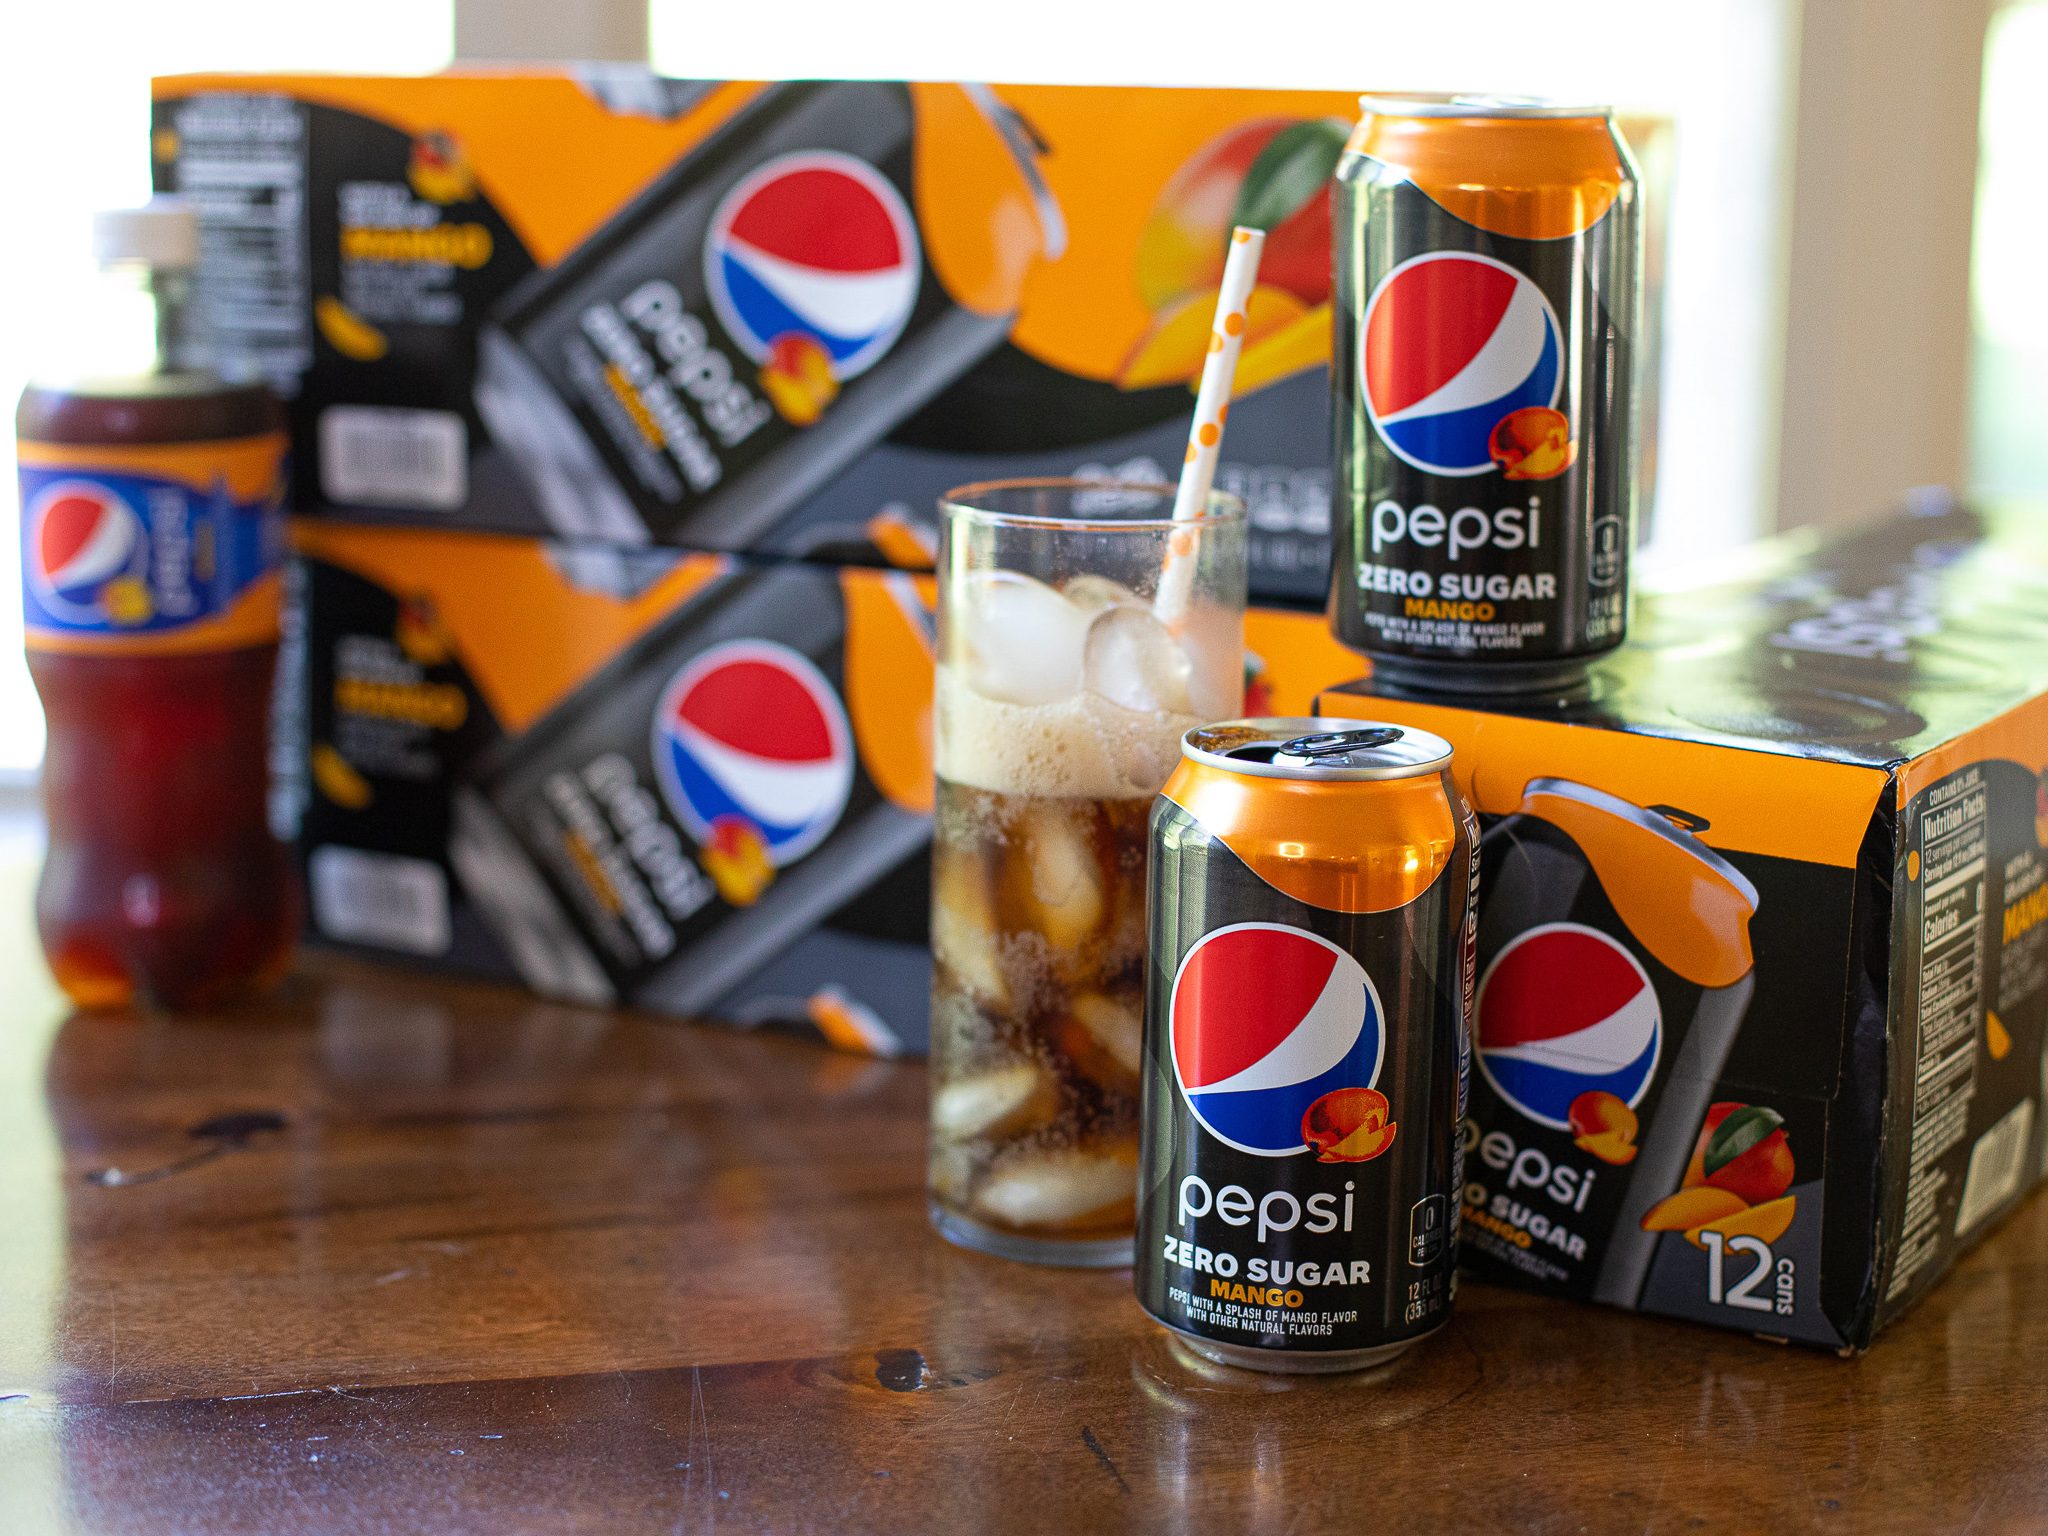 Get Pepsi Zero Sugar 15-Packs For Just $3.67 At Kroger (Regular Price $7.99)